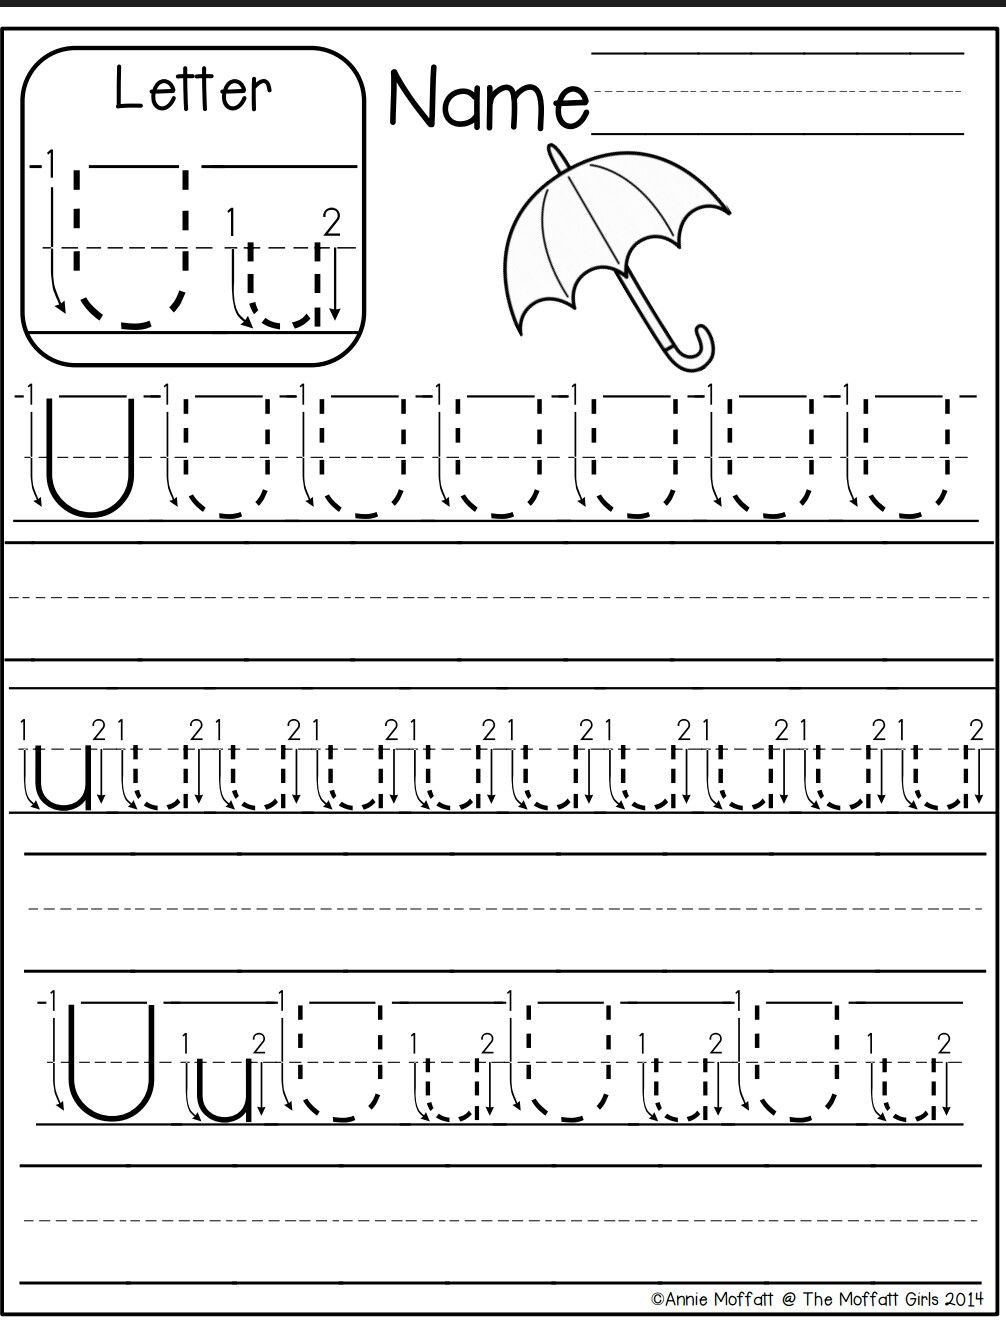 Letter U Worksheet | Kindergarten Worksheets Printable inside Letter U Worksheets Pinterest